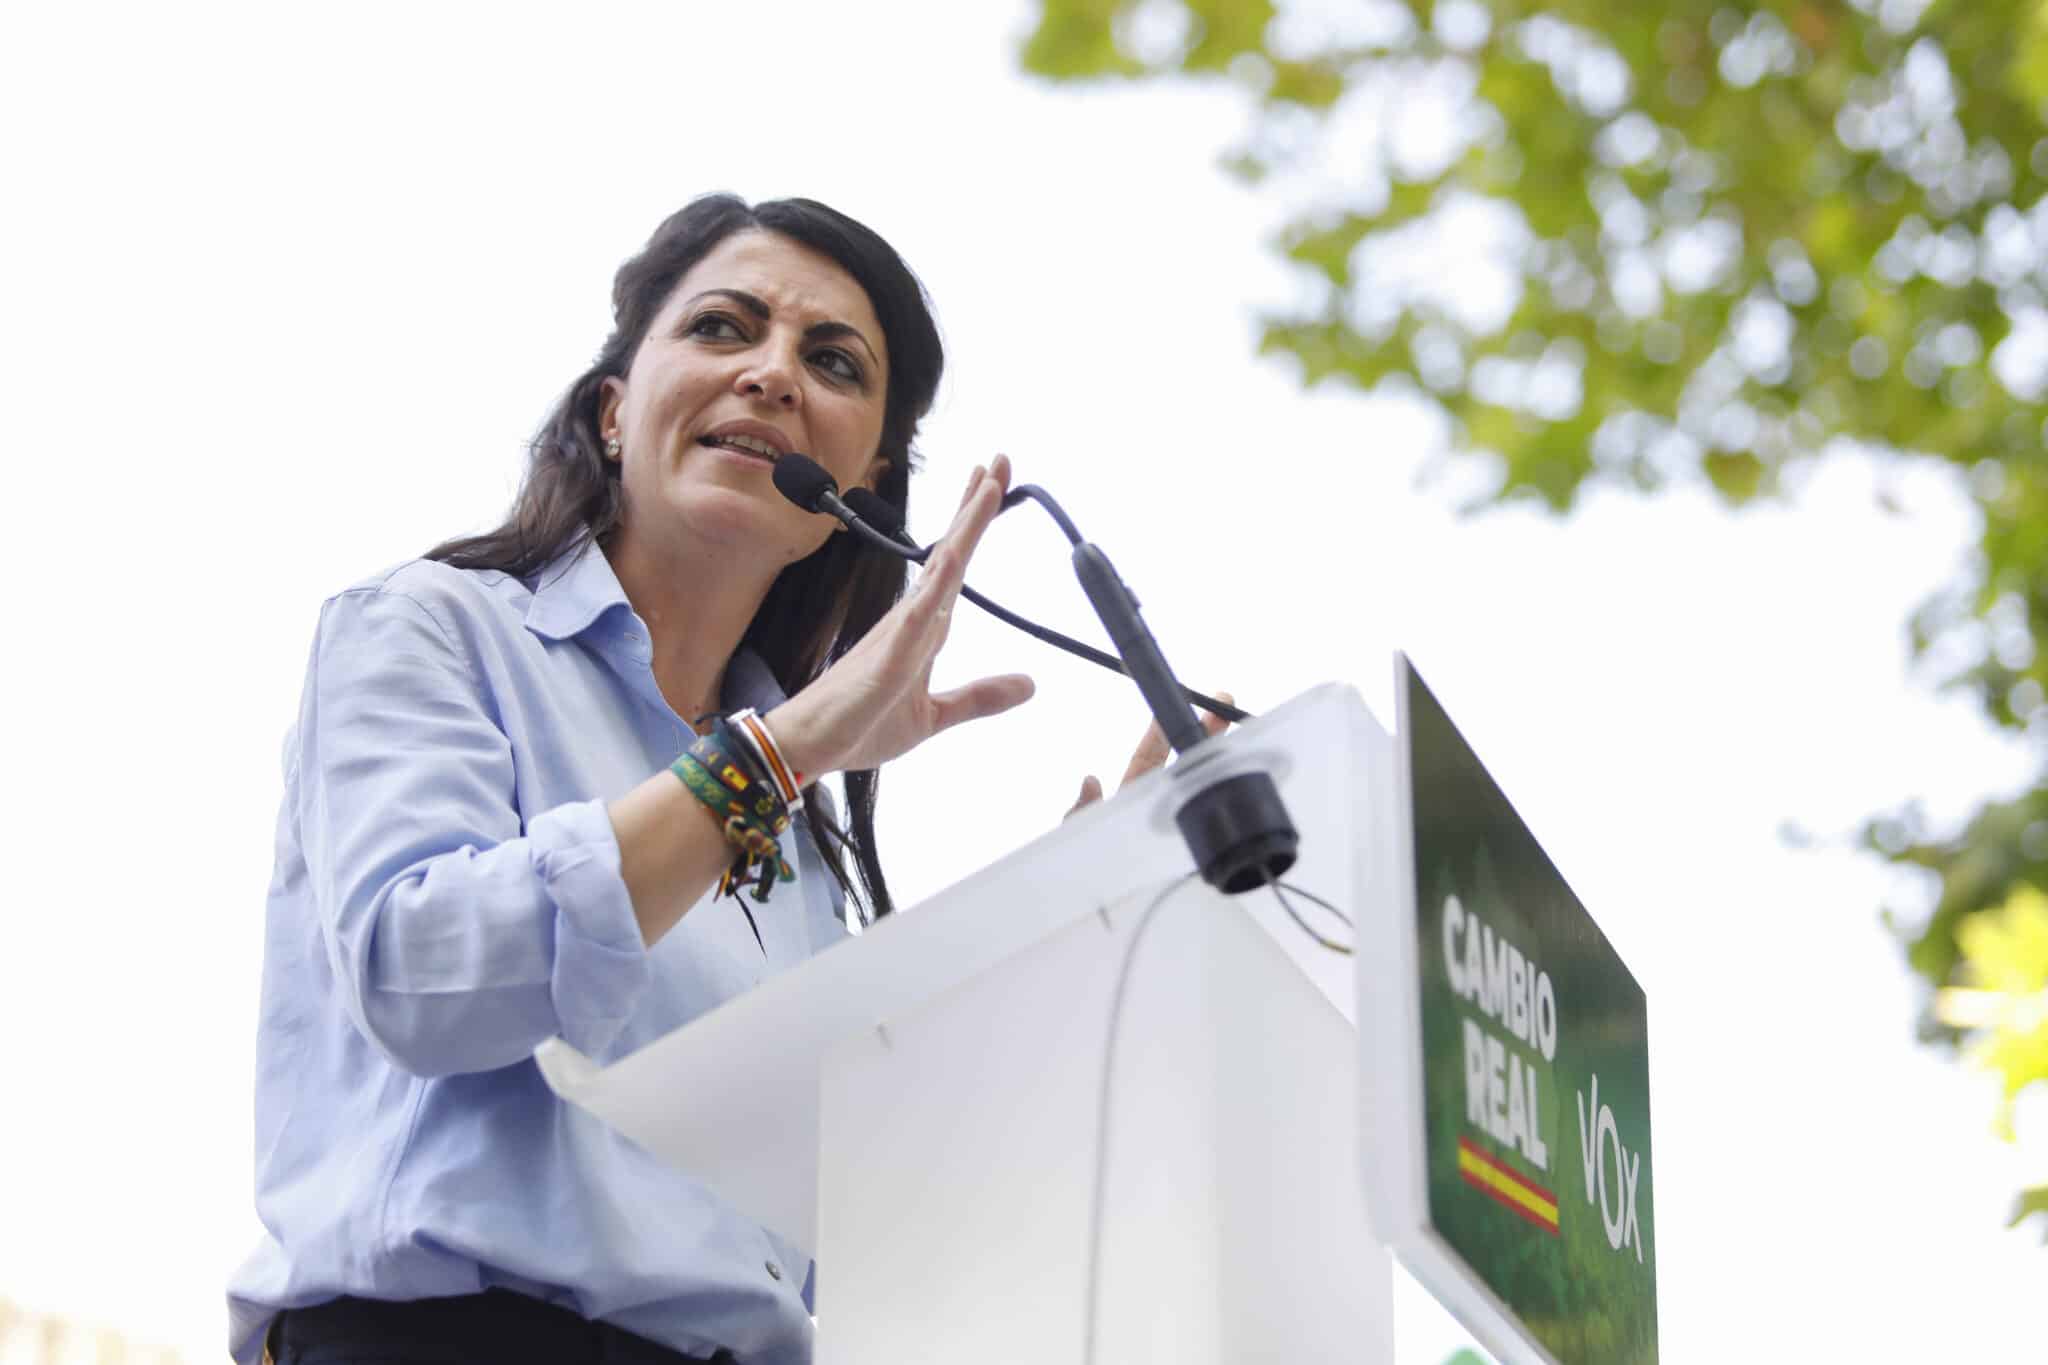 Macarena Olona interviene en un acto preelectoral en Granada como candidata de Vox a la Junta de Andalucía